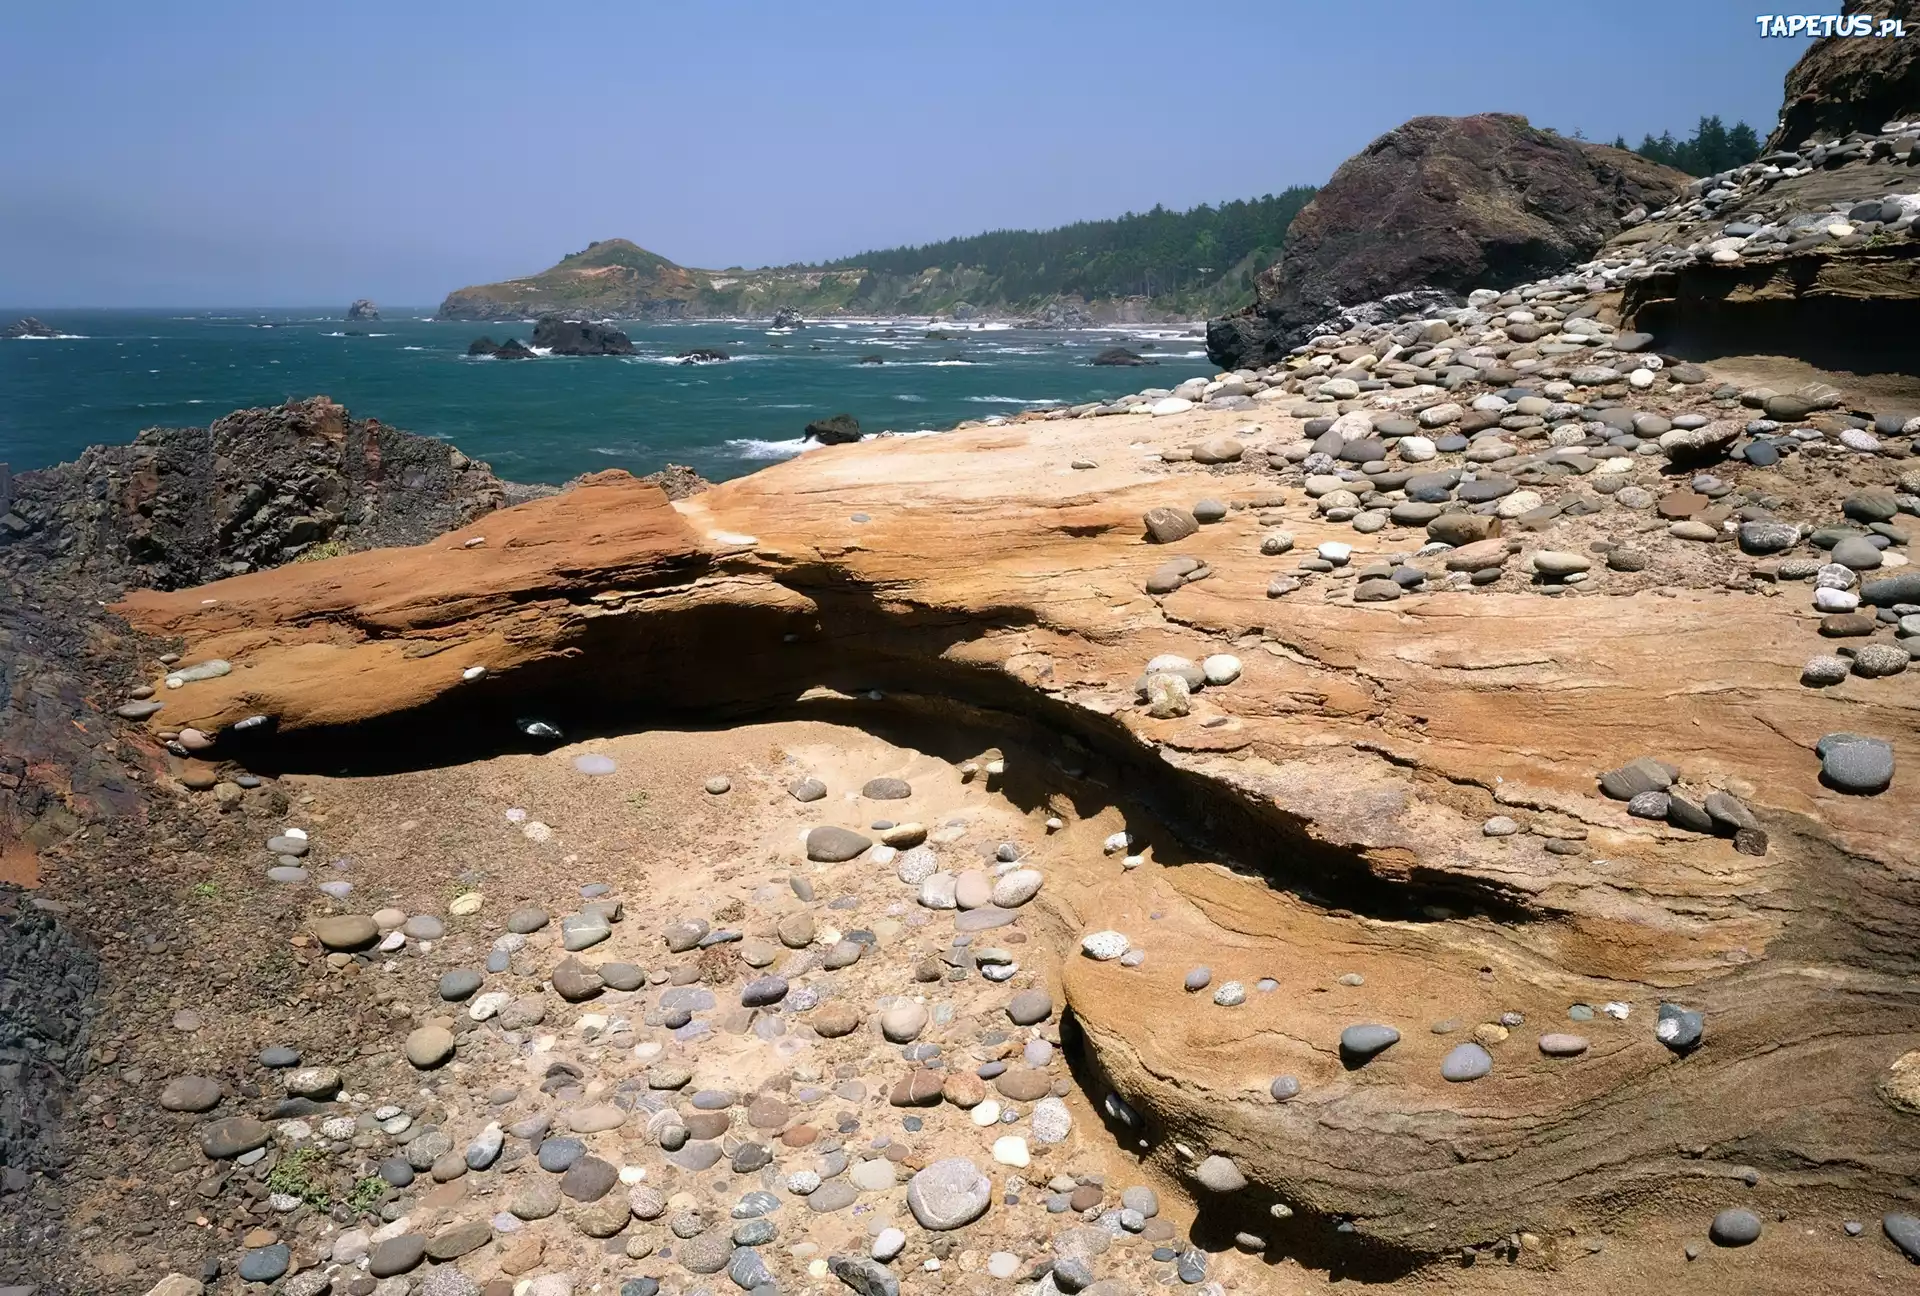 High coast. Дикие пляжи Японии. Южная Африка водоемы каменистые пляжи. Эрозия камня. Береговая линия участка из камней.